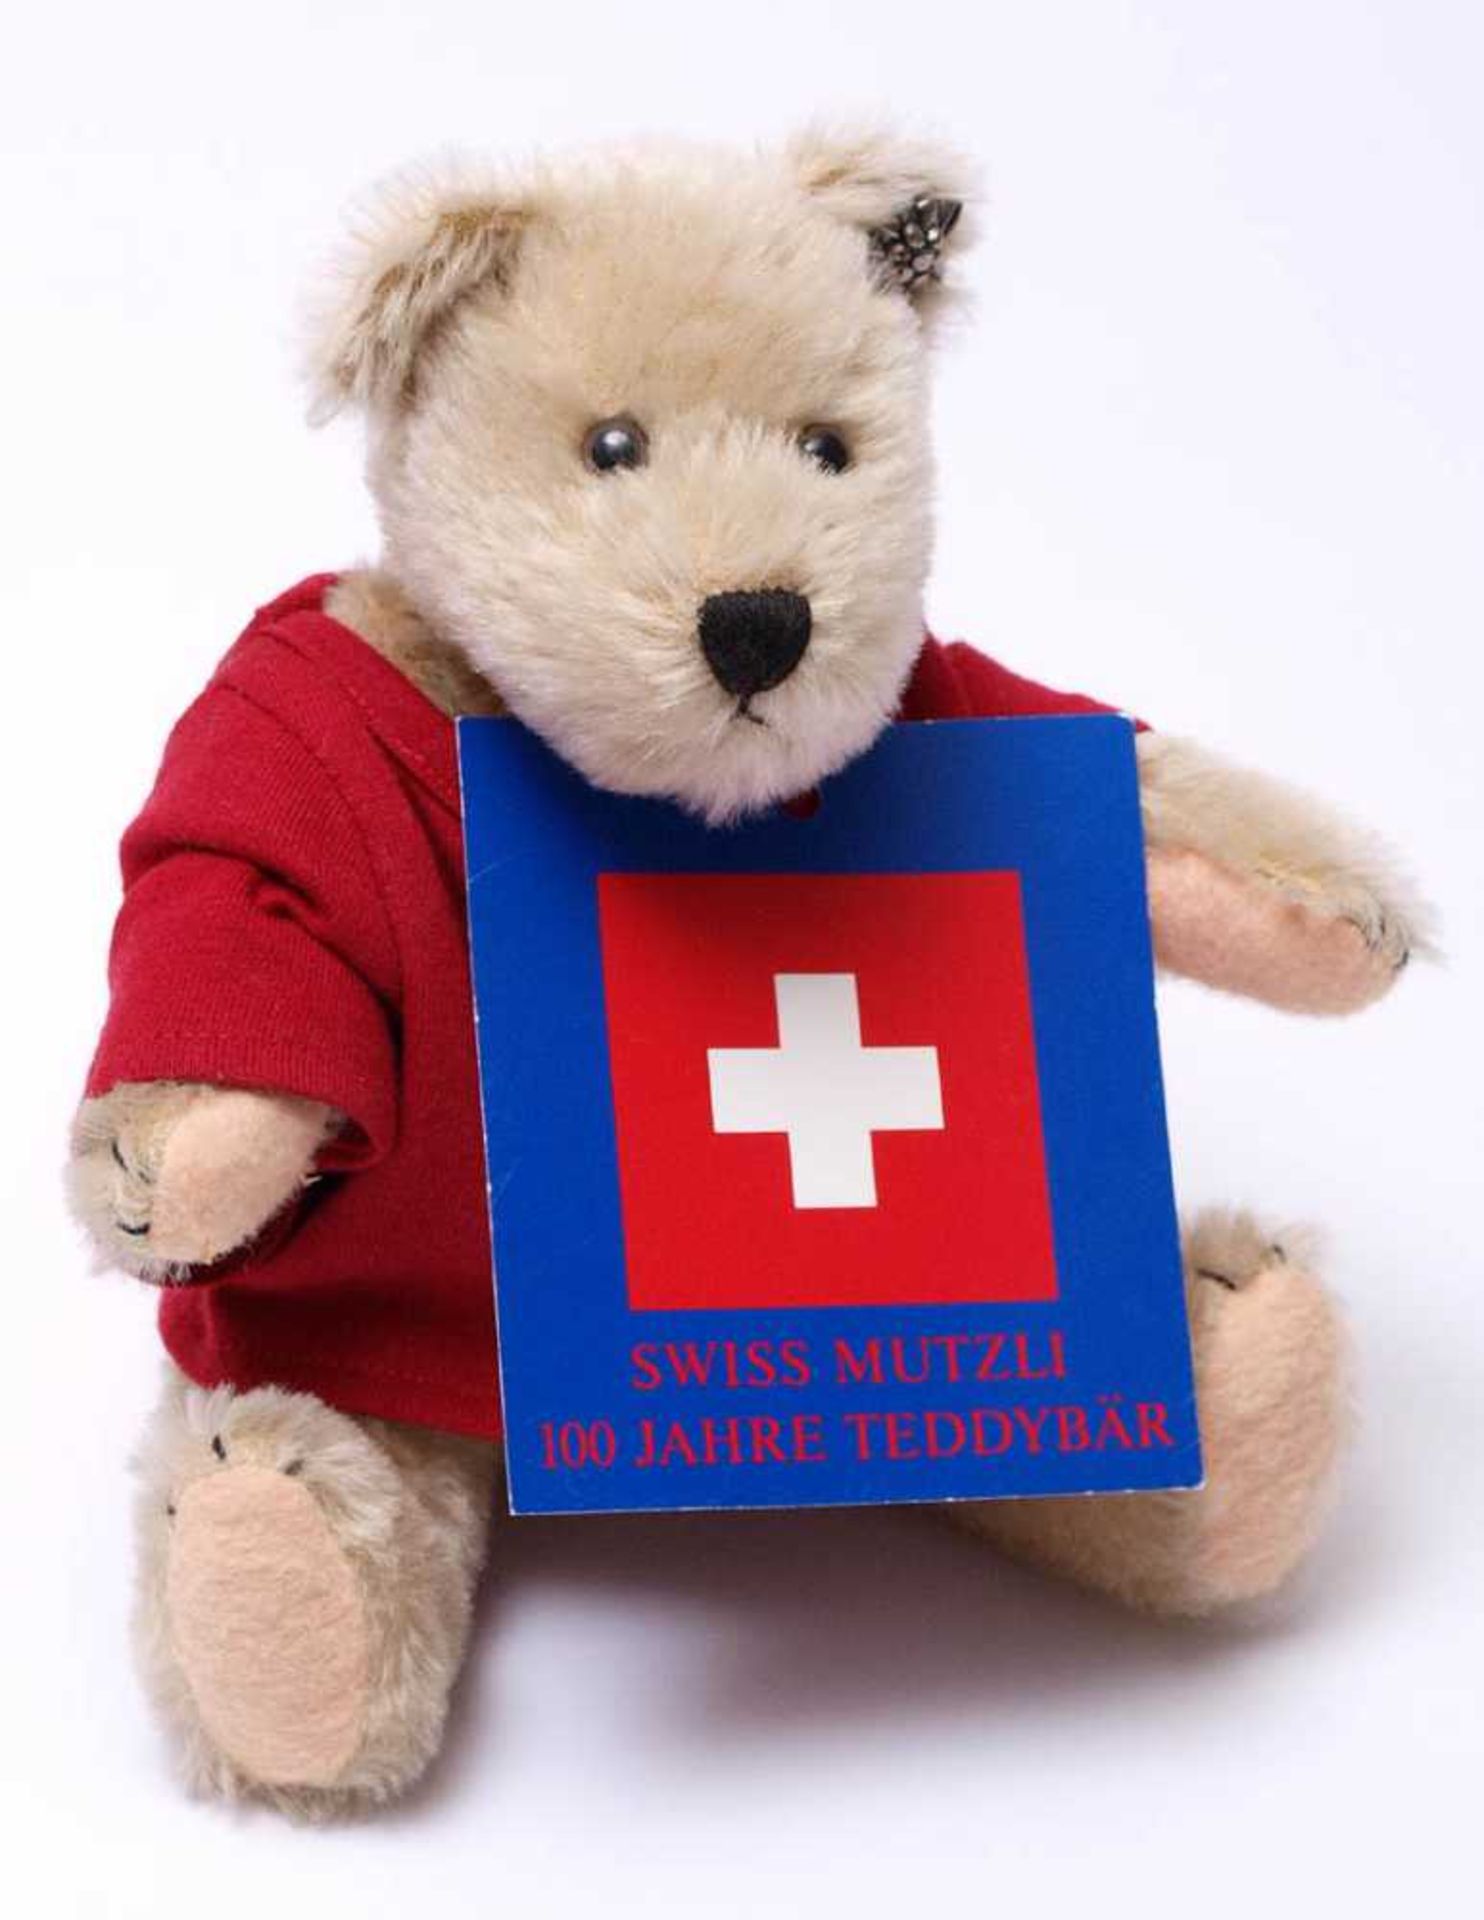 Teddybär Swiss MutzliUnbespielt, mit originaler Kleidung und Edelweiss. Limitierte Auflage, Ex. - Bild 2 aus 4